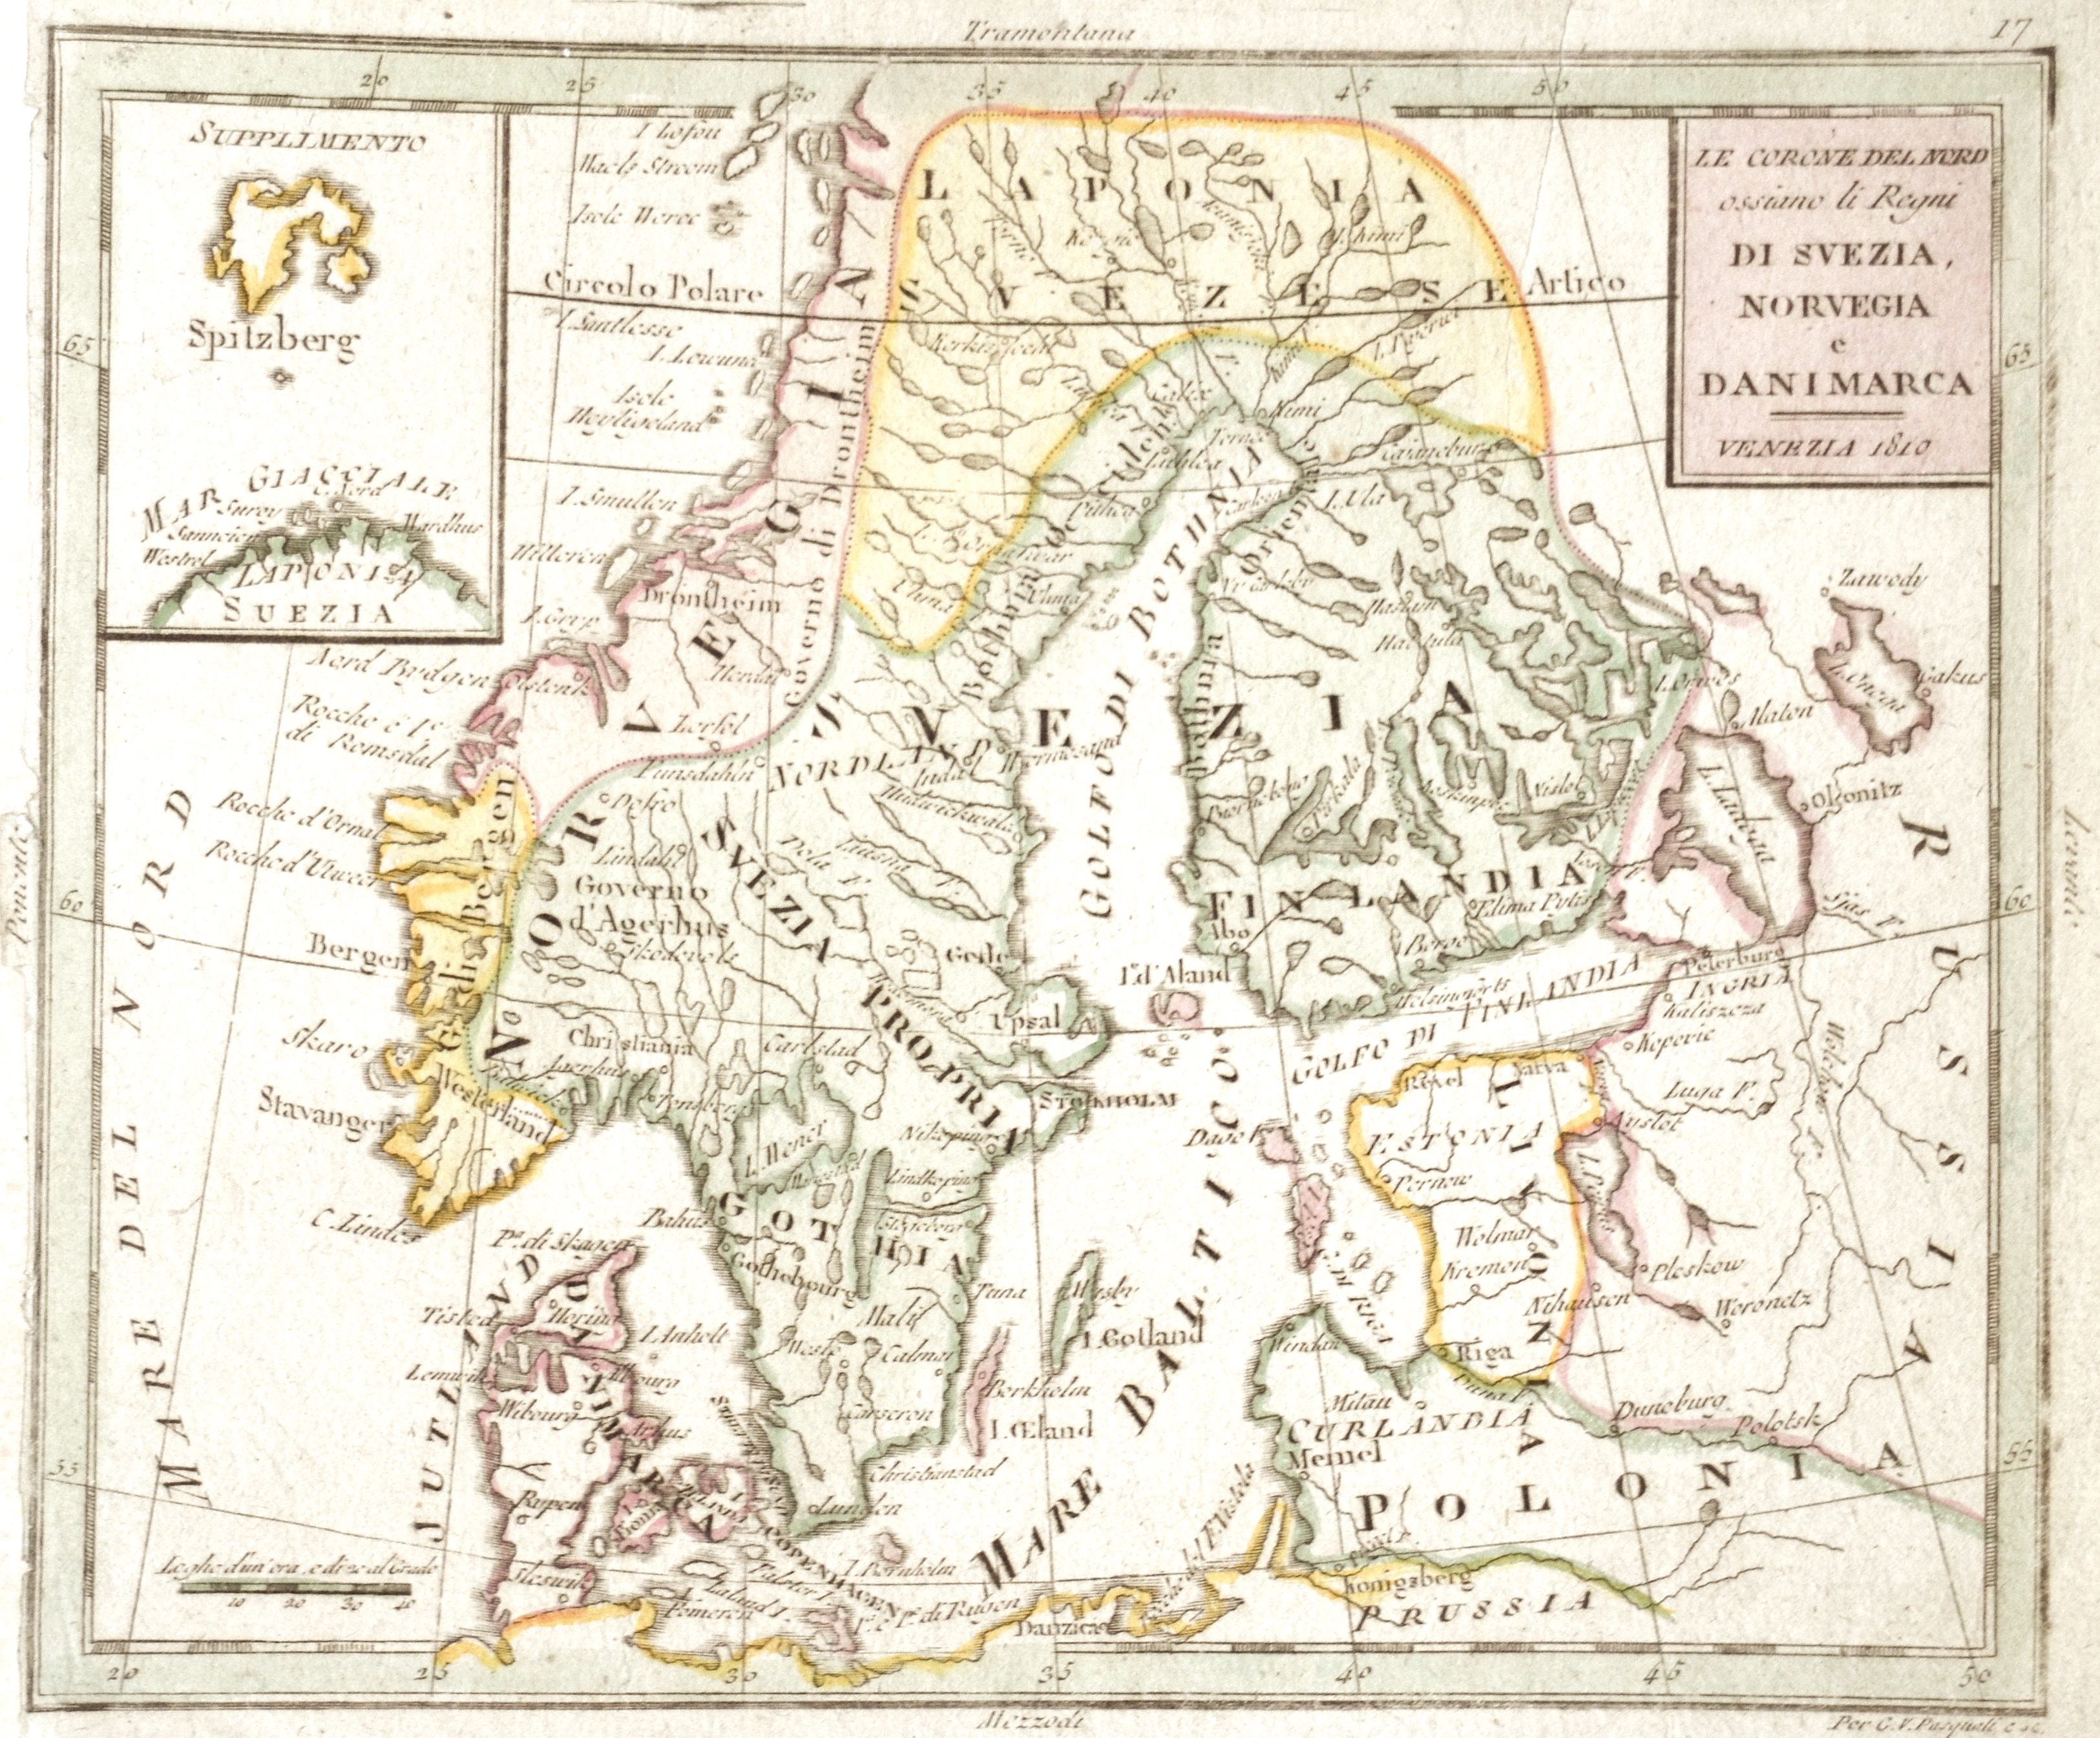 Le Corone del Nord ossiano li Regni di Svezia, Norvegia e Danimarca